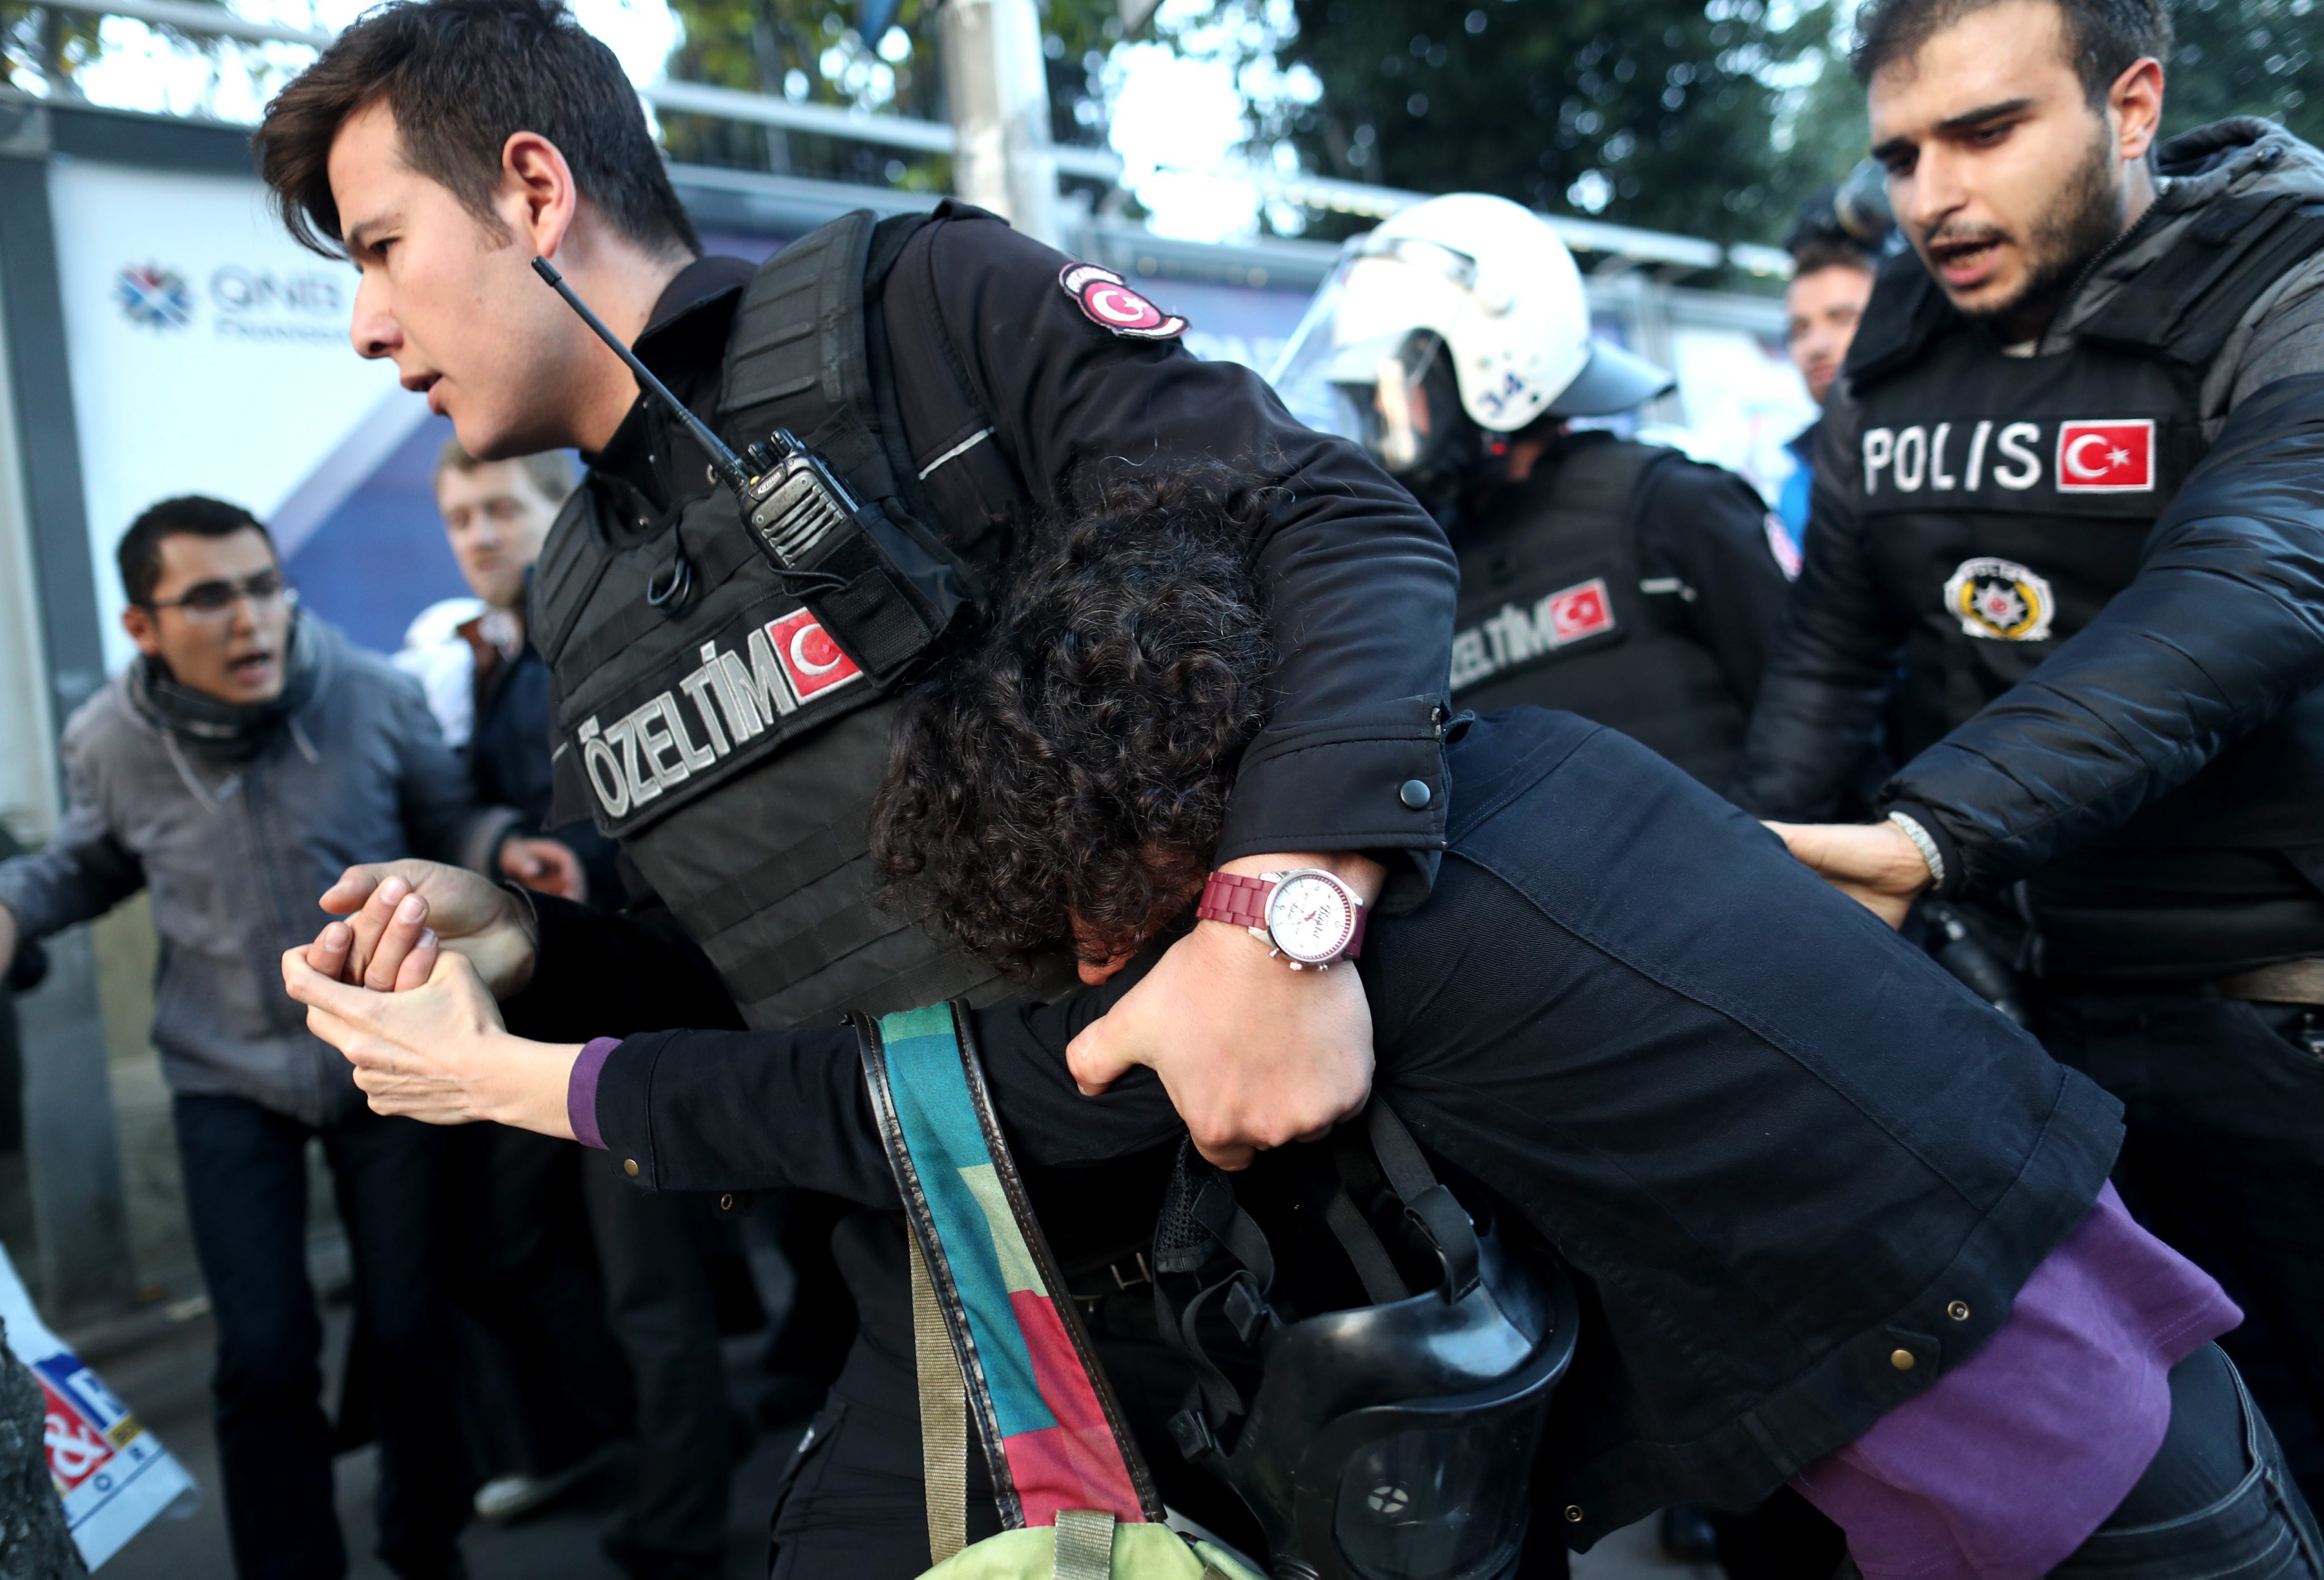 Безредици в Истанбул - турската полиция използва днес водни струи и сълзотворен газ срещу тълпи от протестиращи в града, предаде Ройтерс. Сред протестиращите са преподаватели, учители и студенти. Фоторепортер на агенцията, намиращ се на мястото на събитието, каза, че полицията опитва да спре тълпата от демонстранти, които искат да стигнат до офиса на опозиционния вестник "Джумхуриет", служители на който тази бяха задържани.